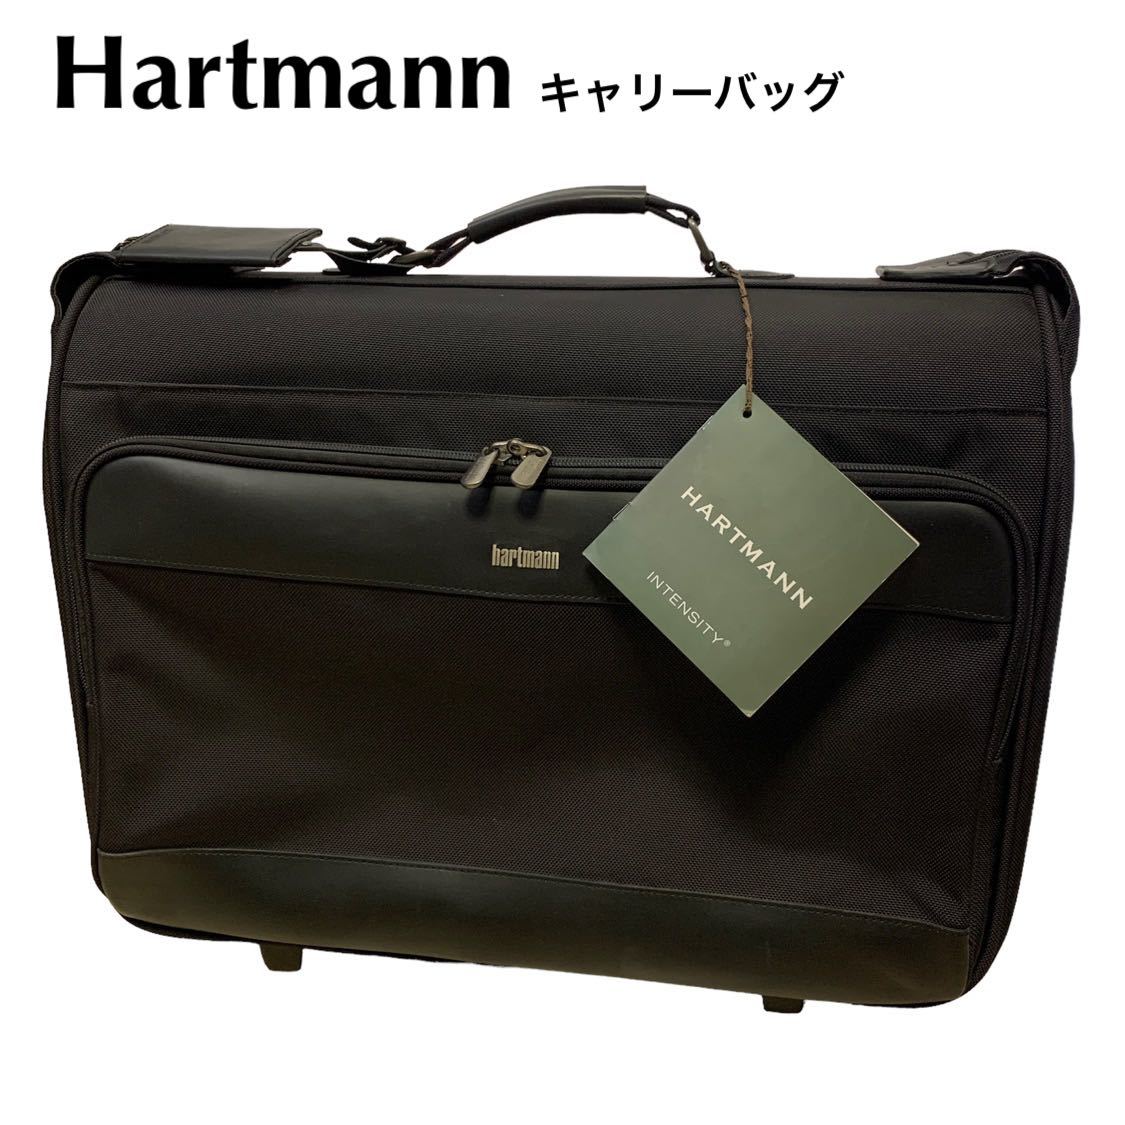 良品 ハートマン Hartmann キャリーバッグ 旅行鞄 キャリーケース-